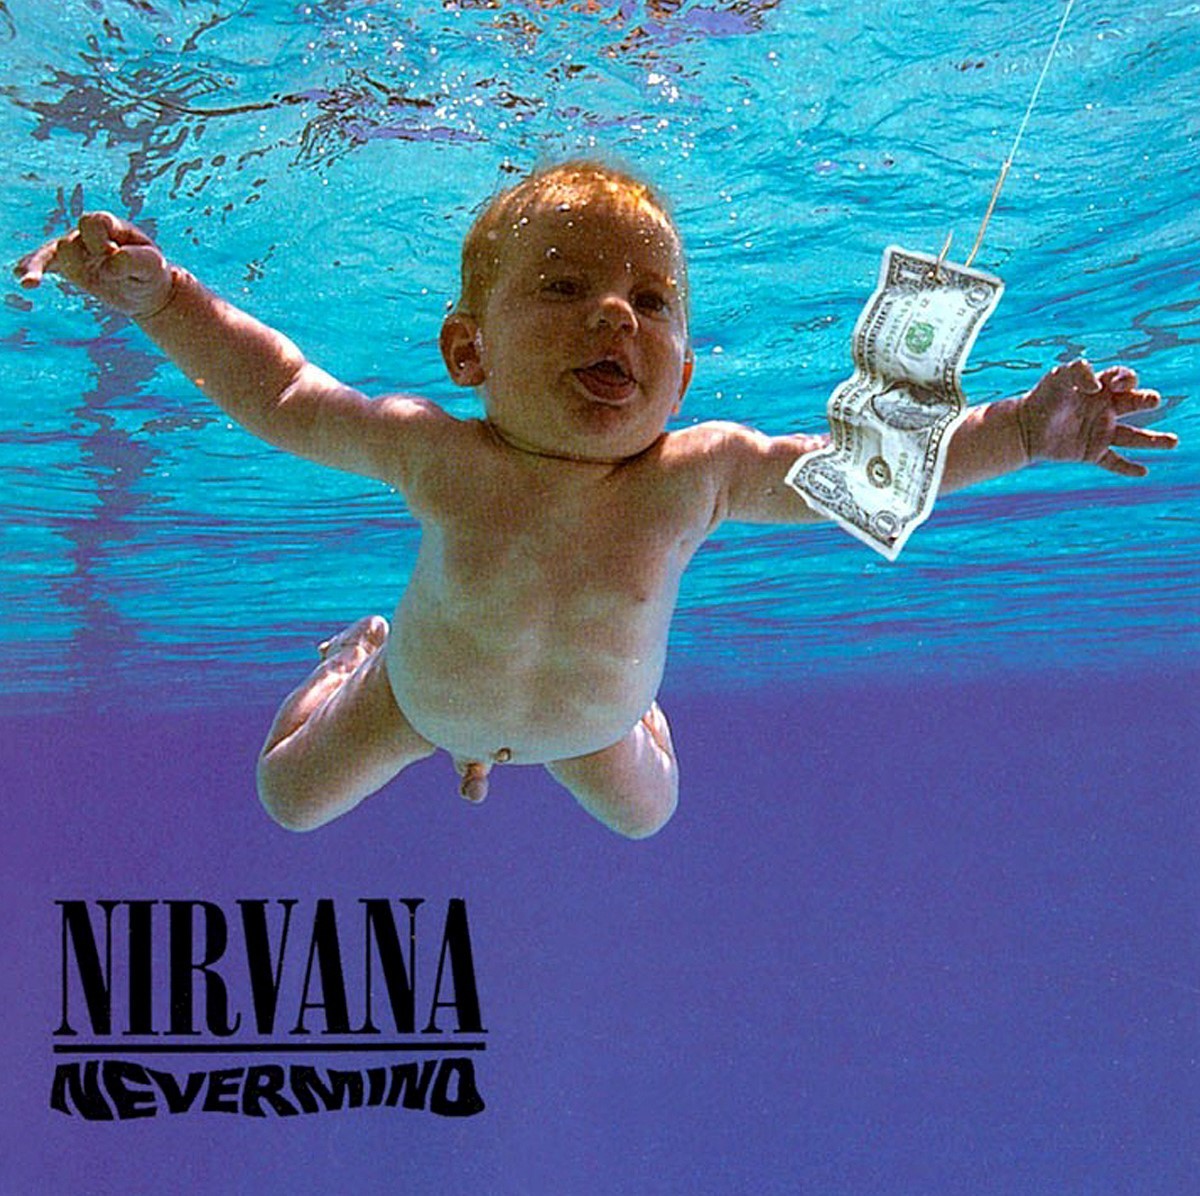 La portada de 1991, con Elden de beb, fue ideada por Cobain.